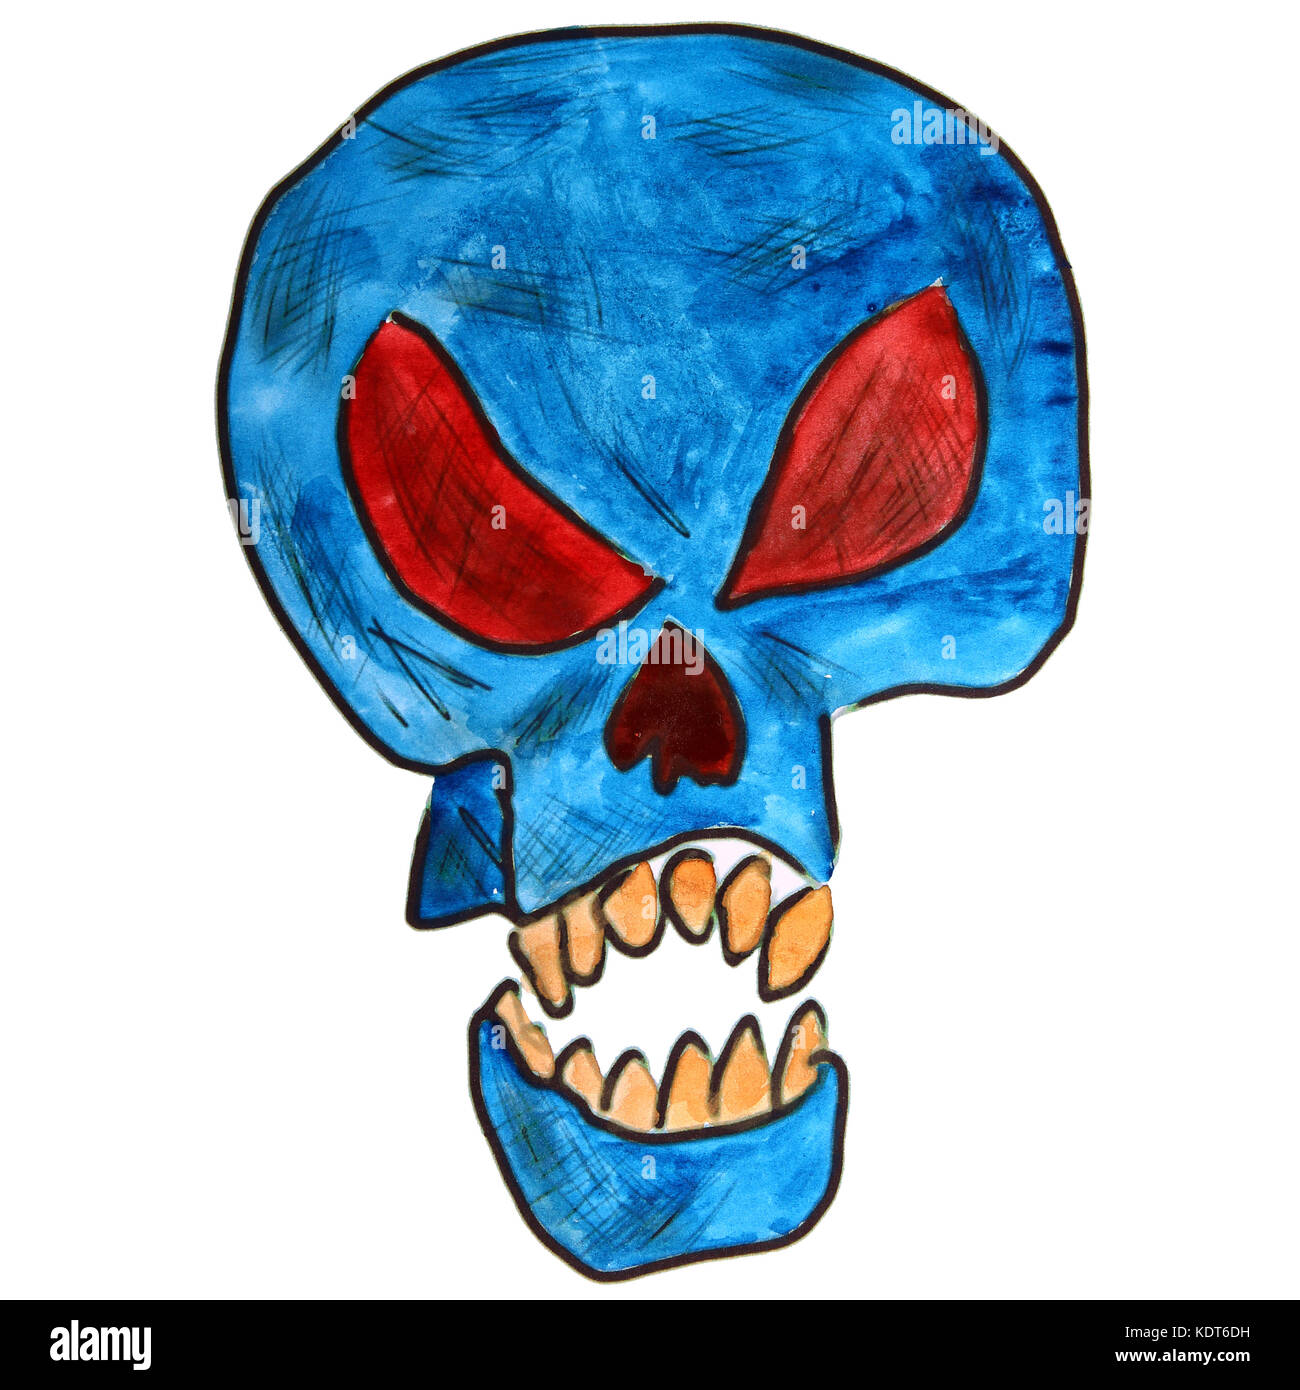 Disegno ad acquerello kids cartoon skull su sfondo bianco Foto Stock